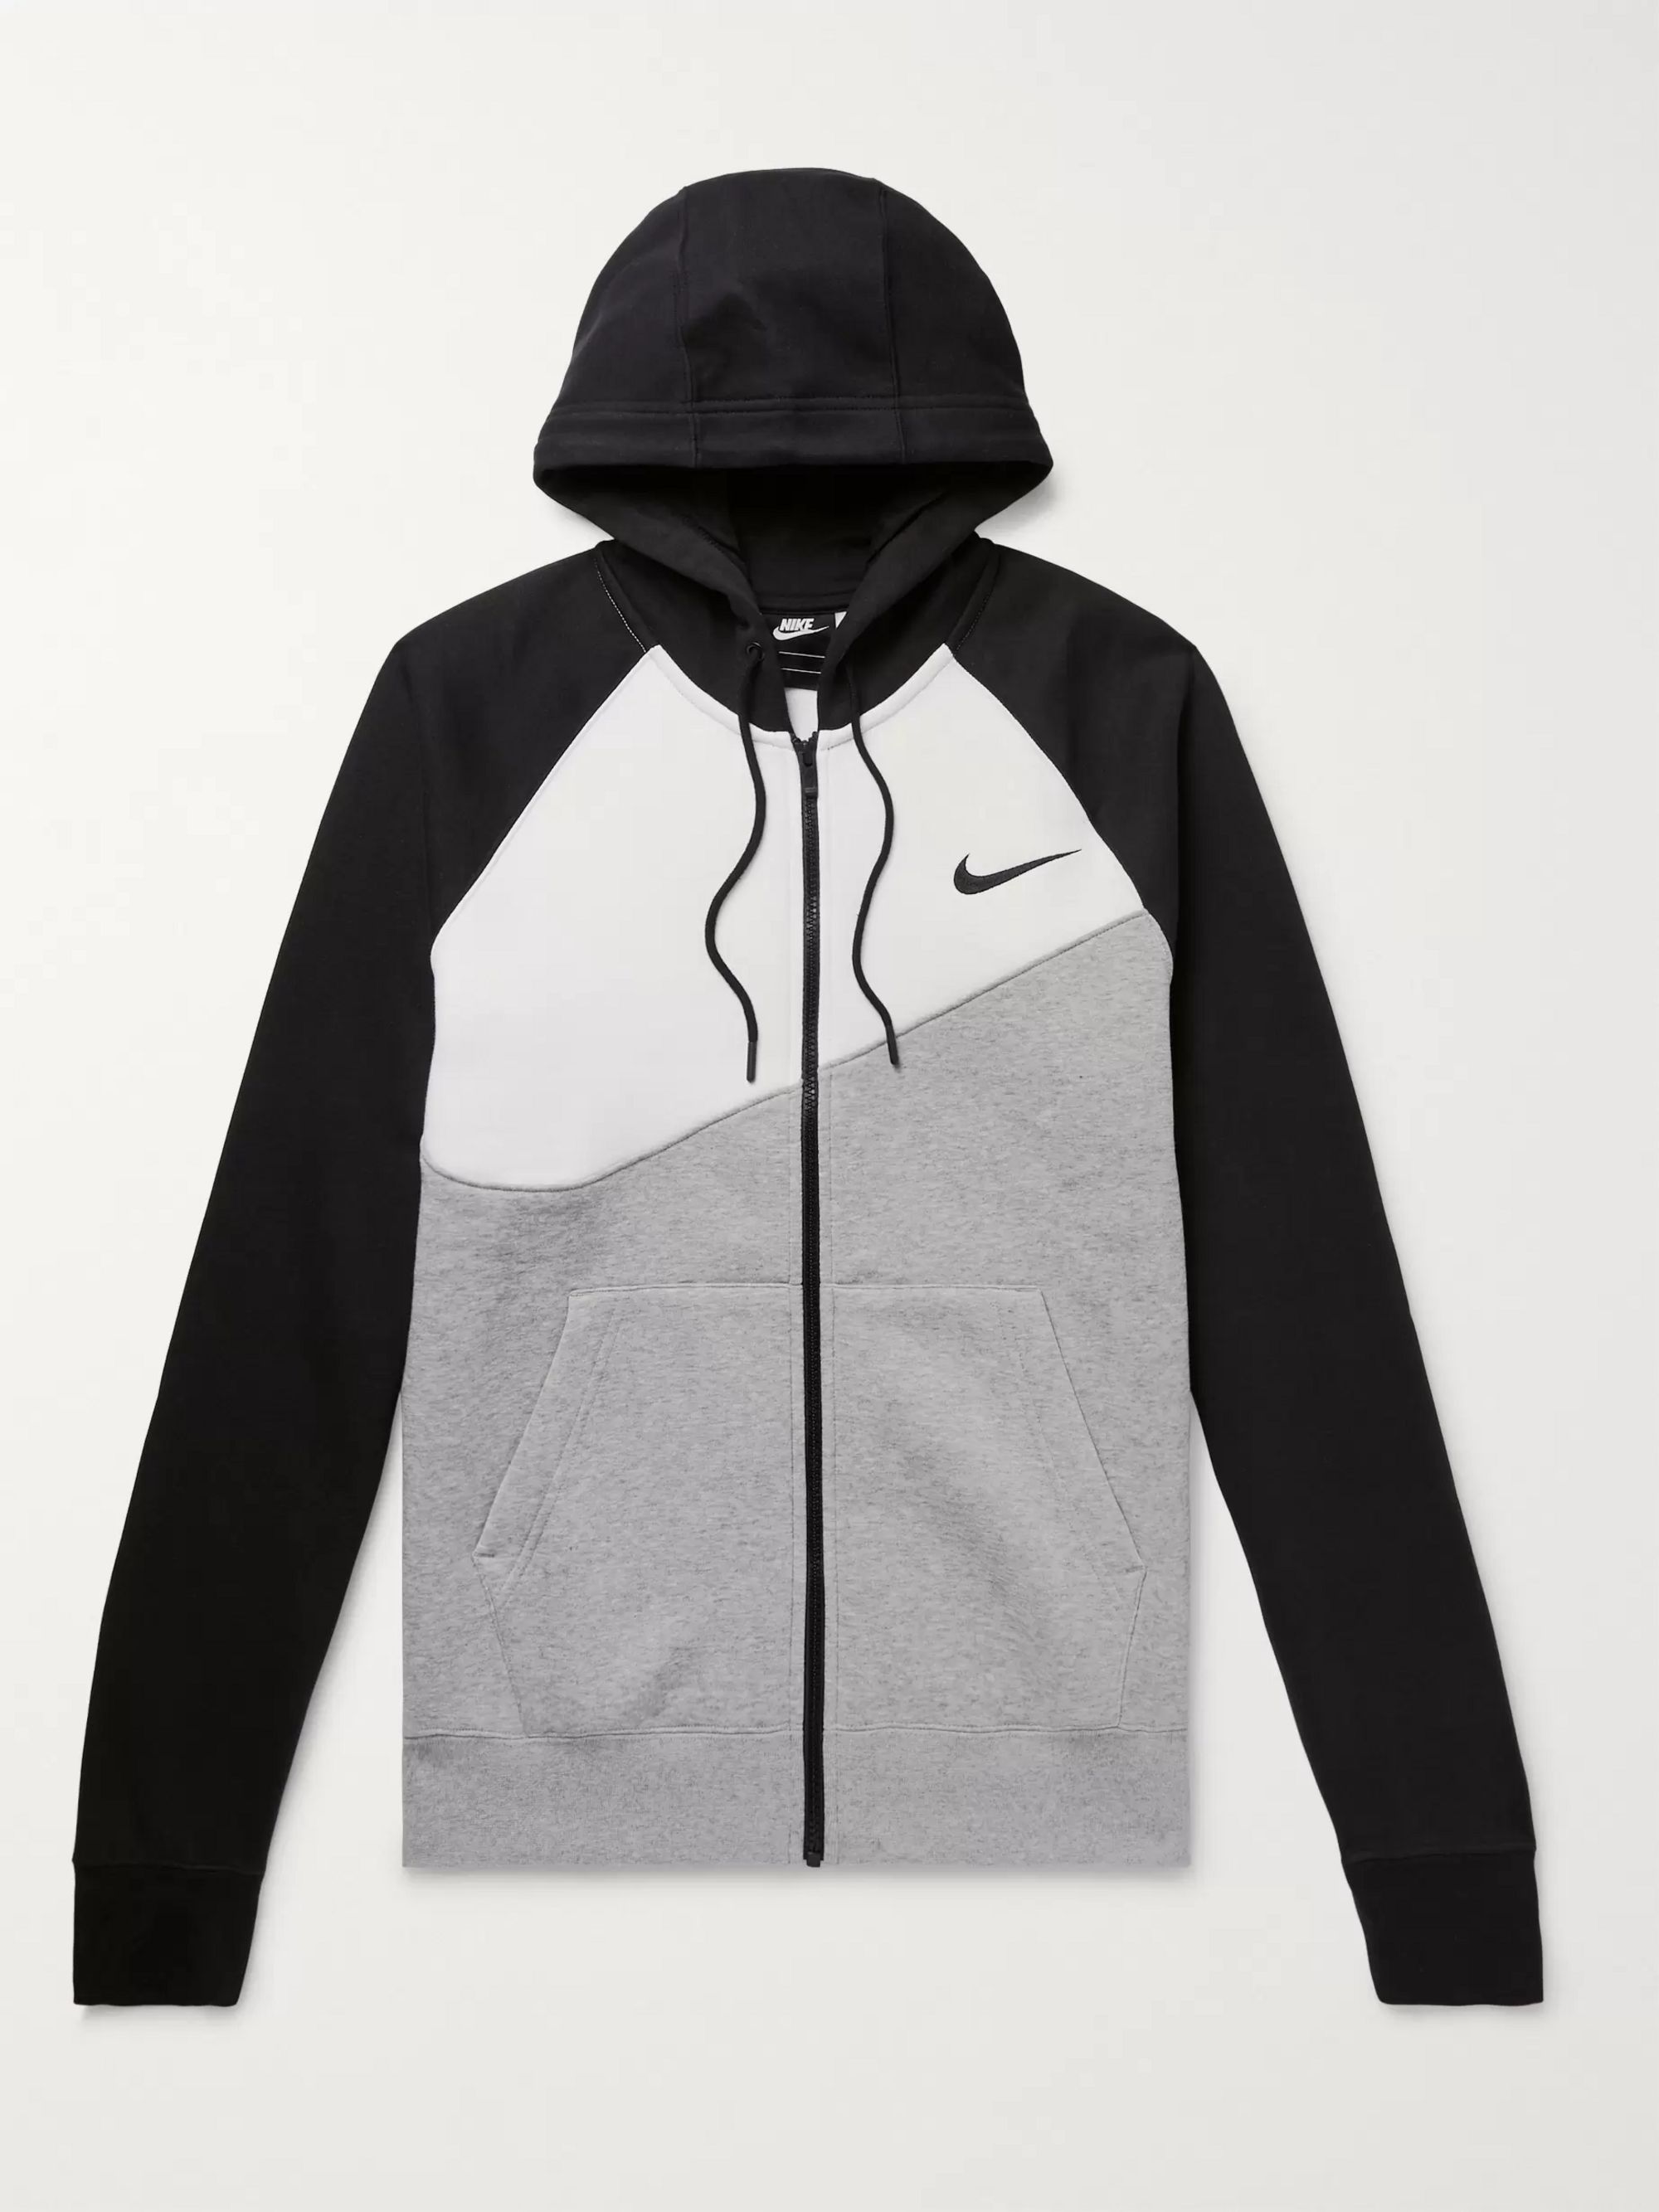 nike grey and black hoodie